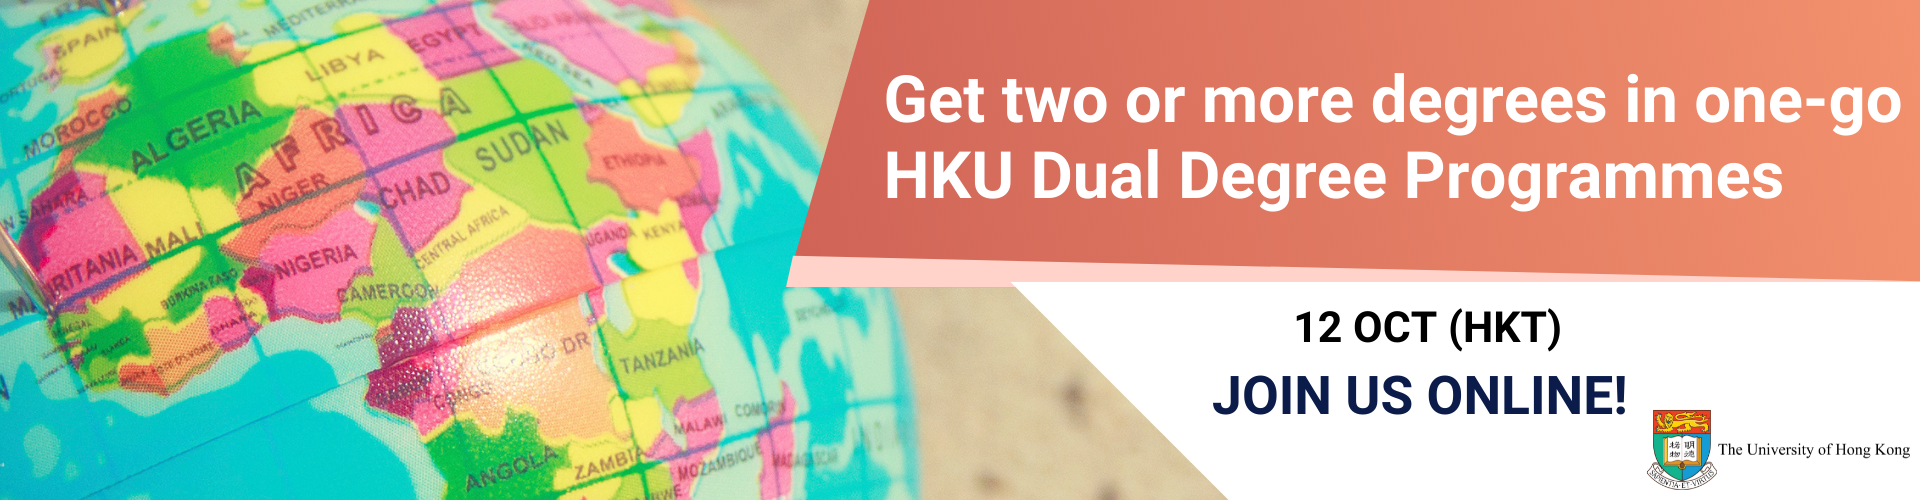 動畫文本 "Get two or more degrees in one-go HKU Dual Degree Programmes 12 Oct (HKT) Join us online" with photo of the globe